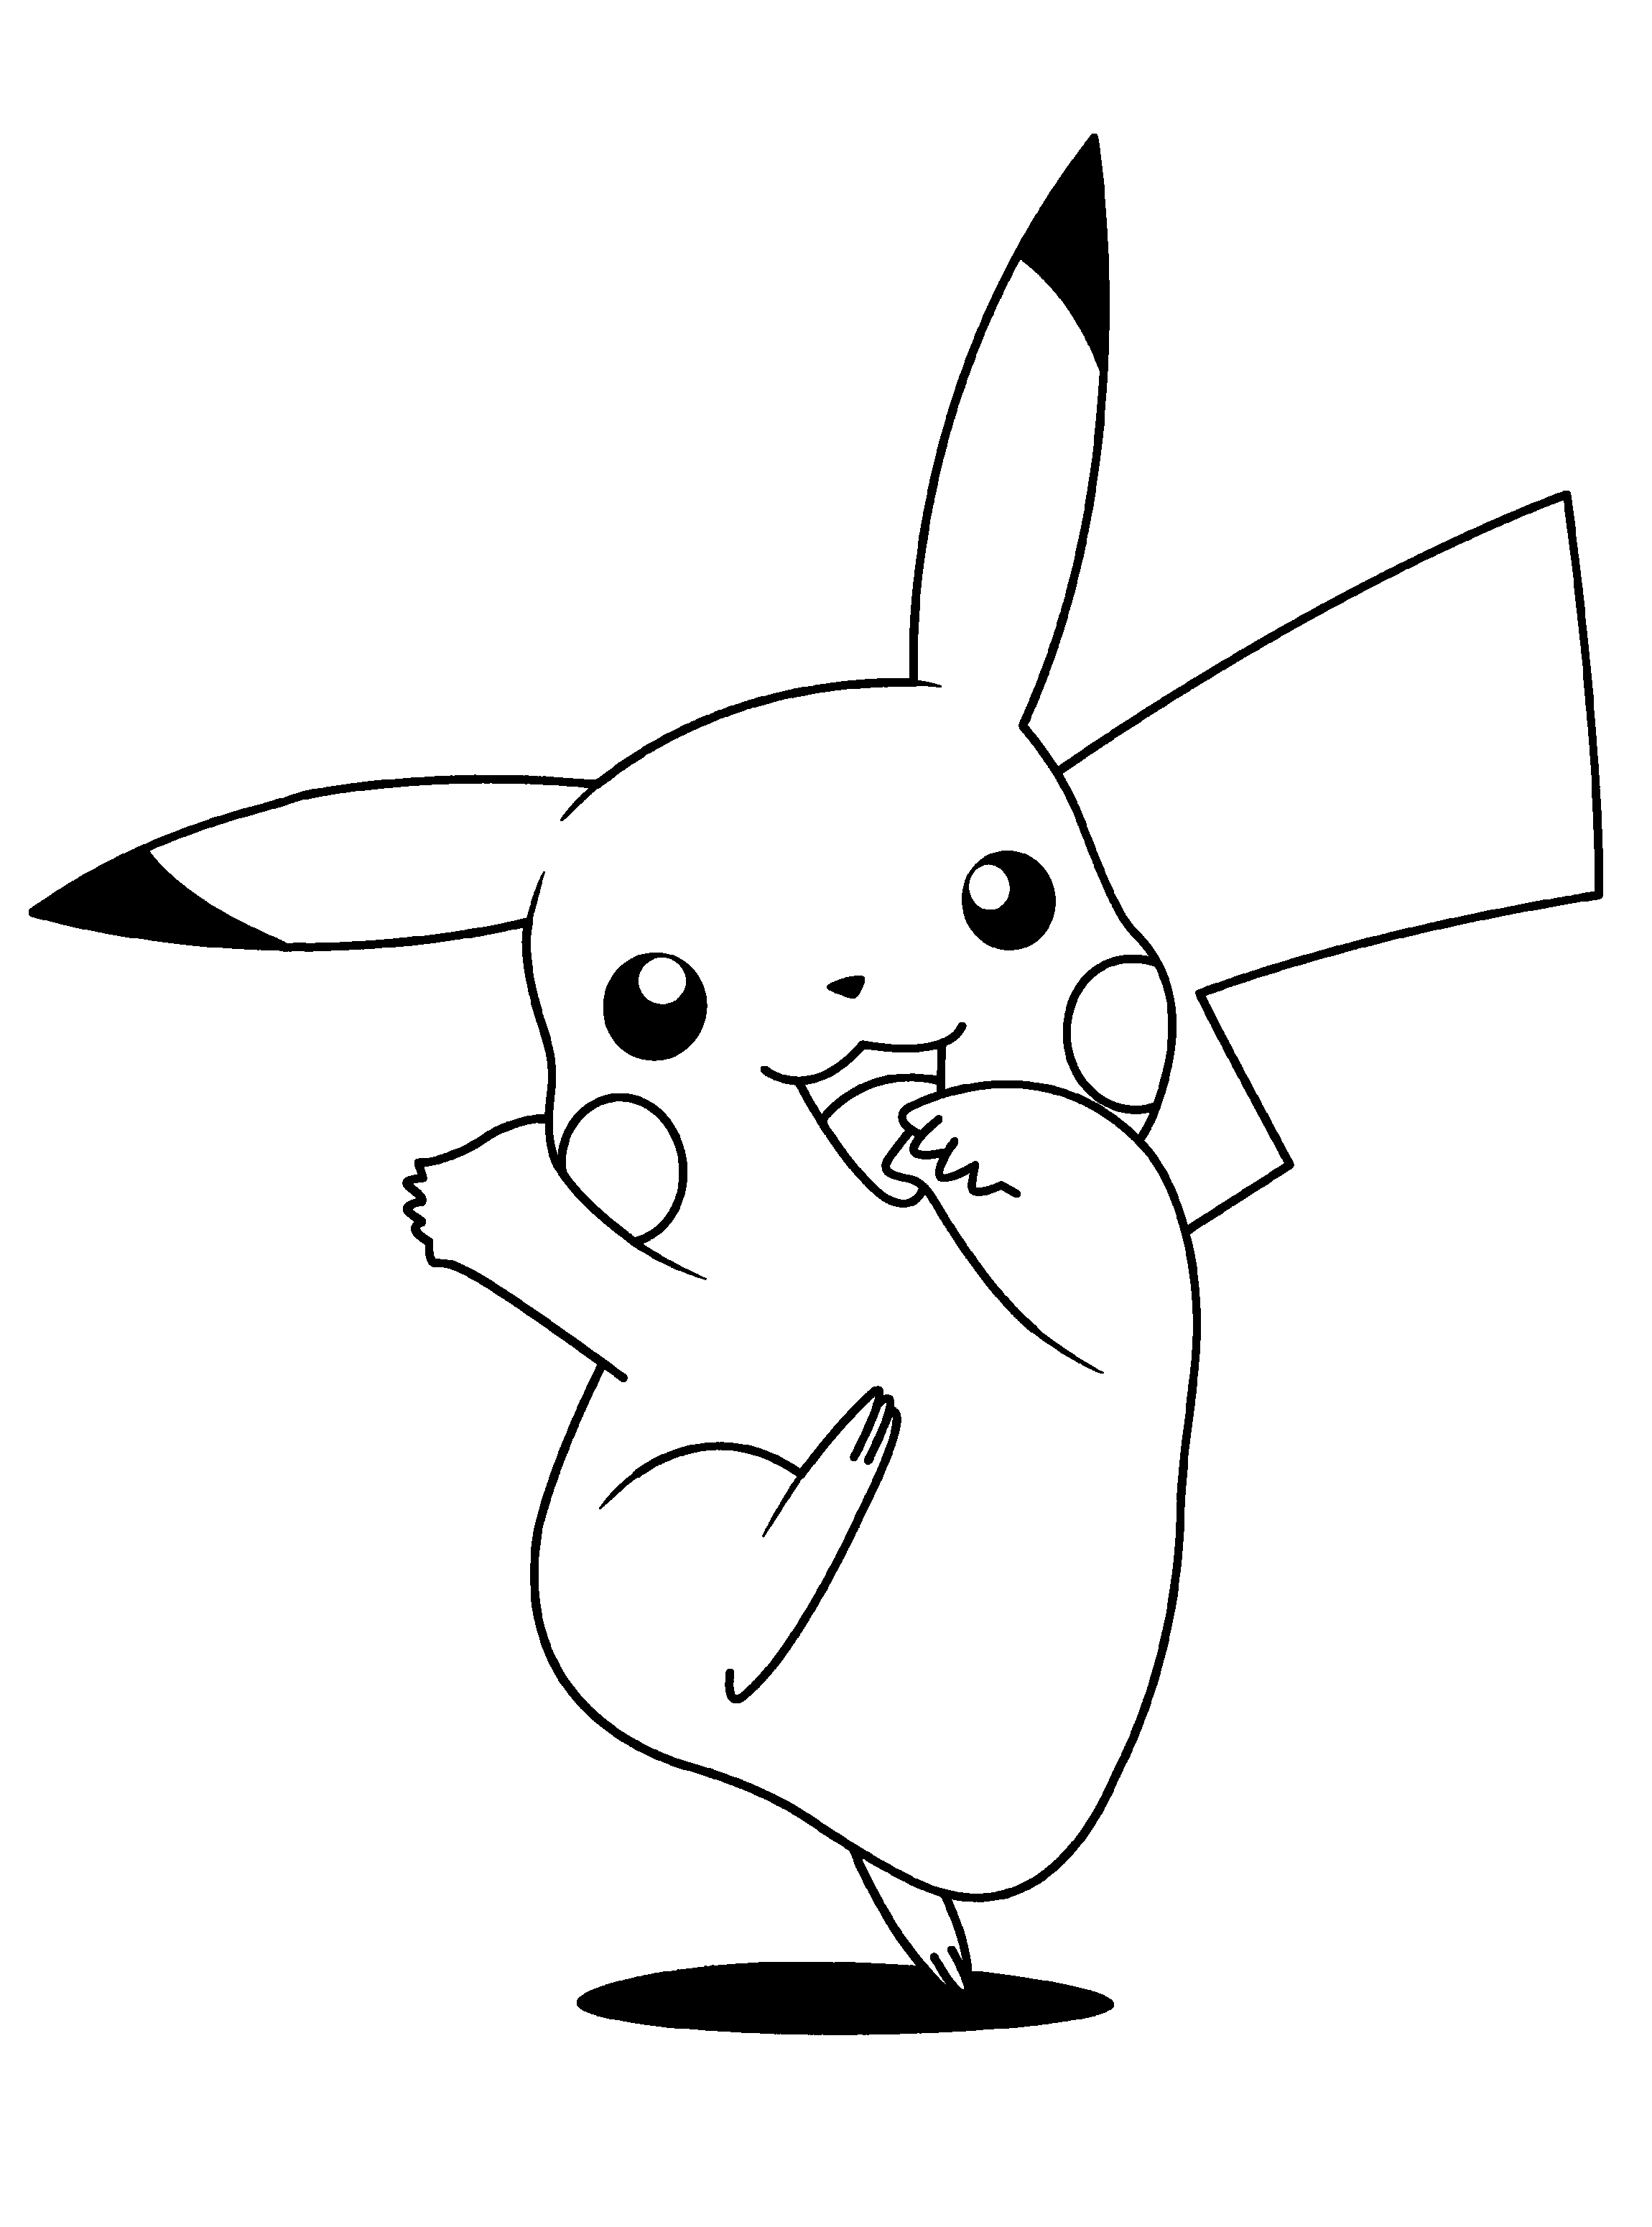 Pikachu a colorier